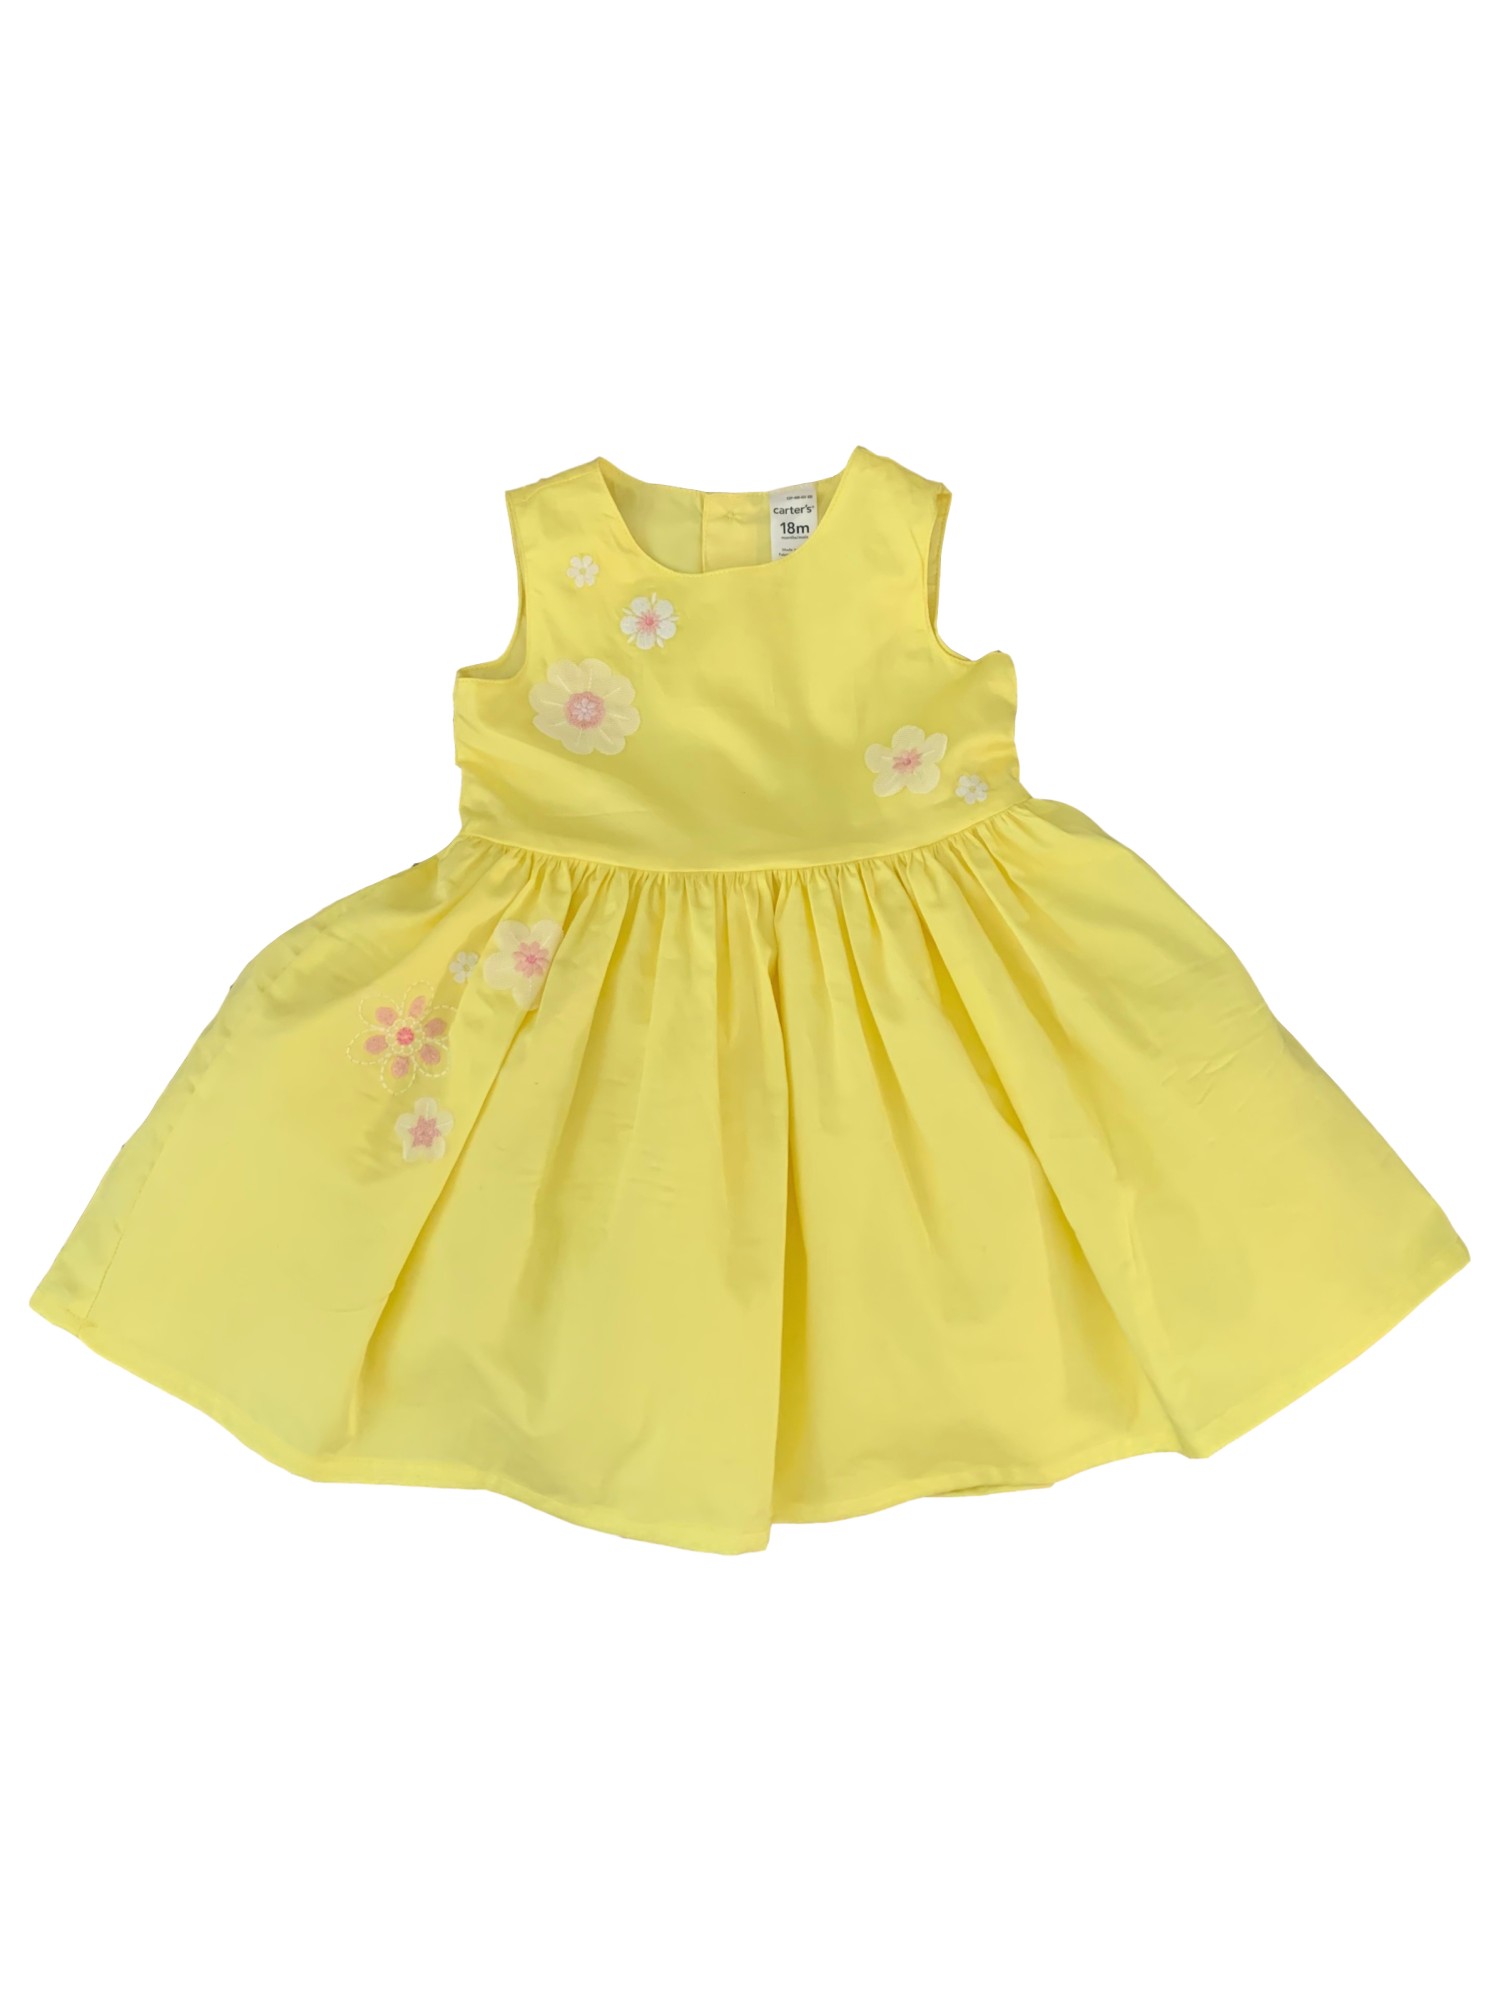 Carter's Carters Infant Girls Yellow & Pink Flower Sleeveless A-Line Dress 18M